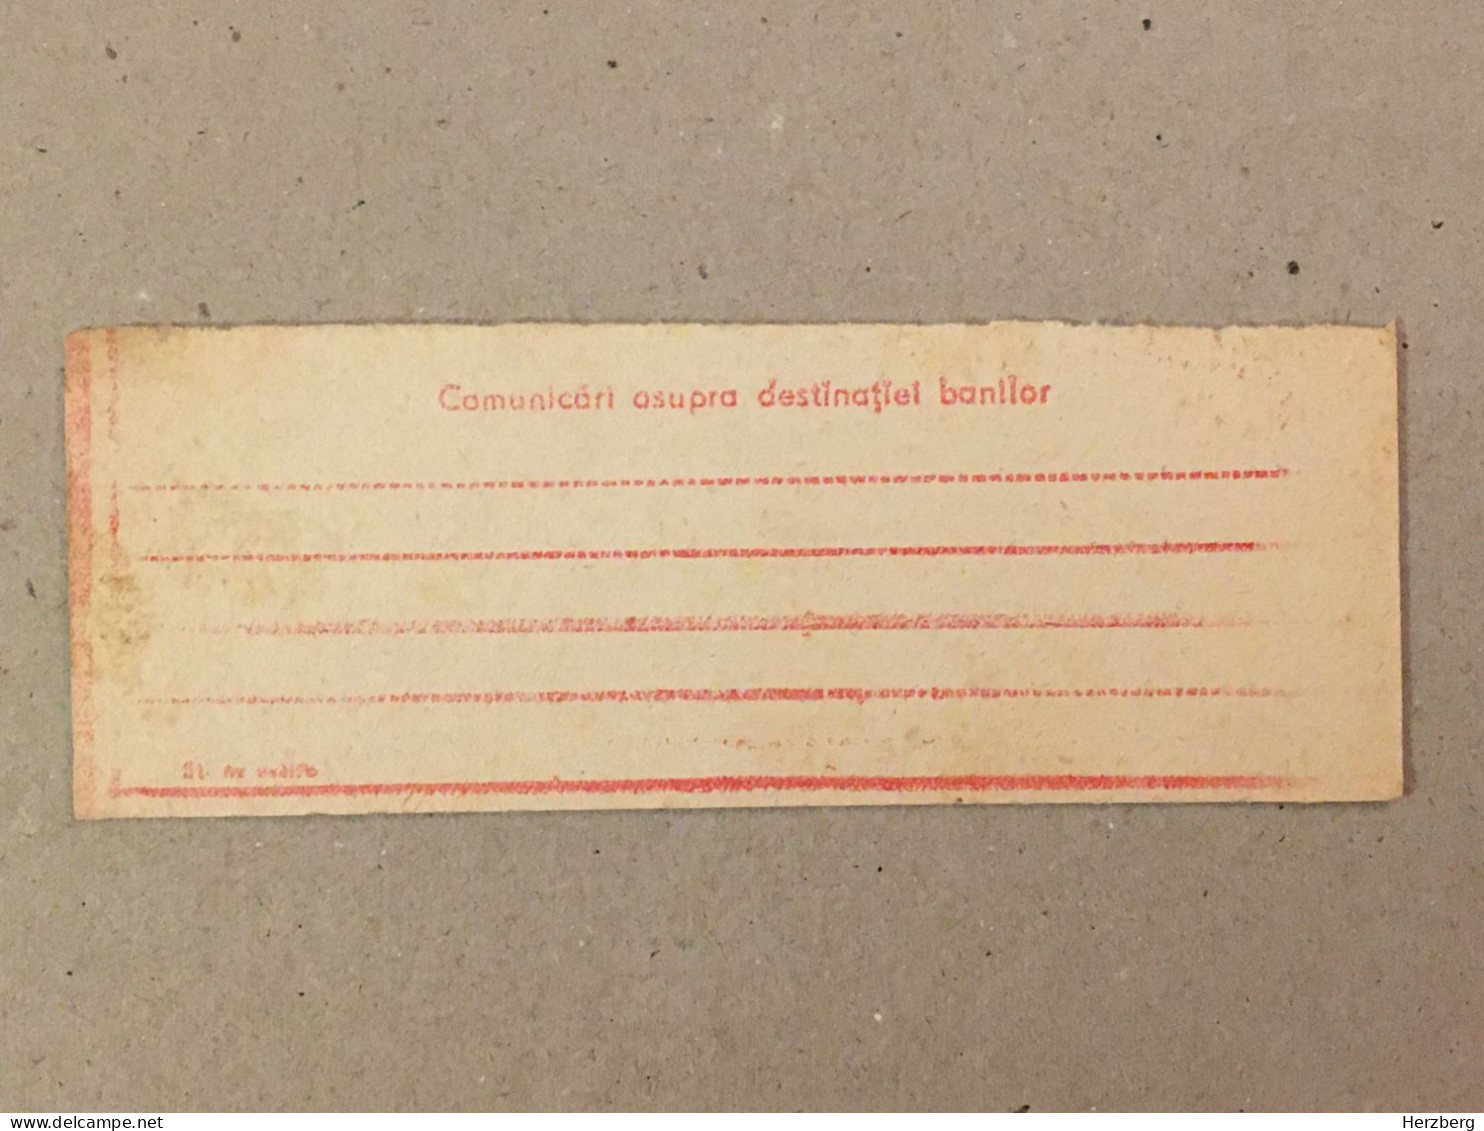 Romania Rumanien Roumanie - Cupon Mandat Postal Coupon Mandate Postauftrag - Suceava 1971 - Covers & Documents